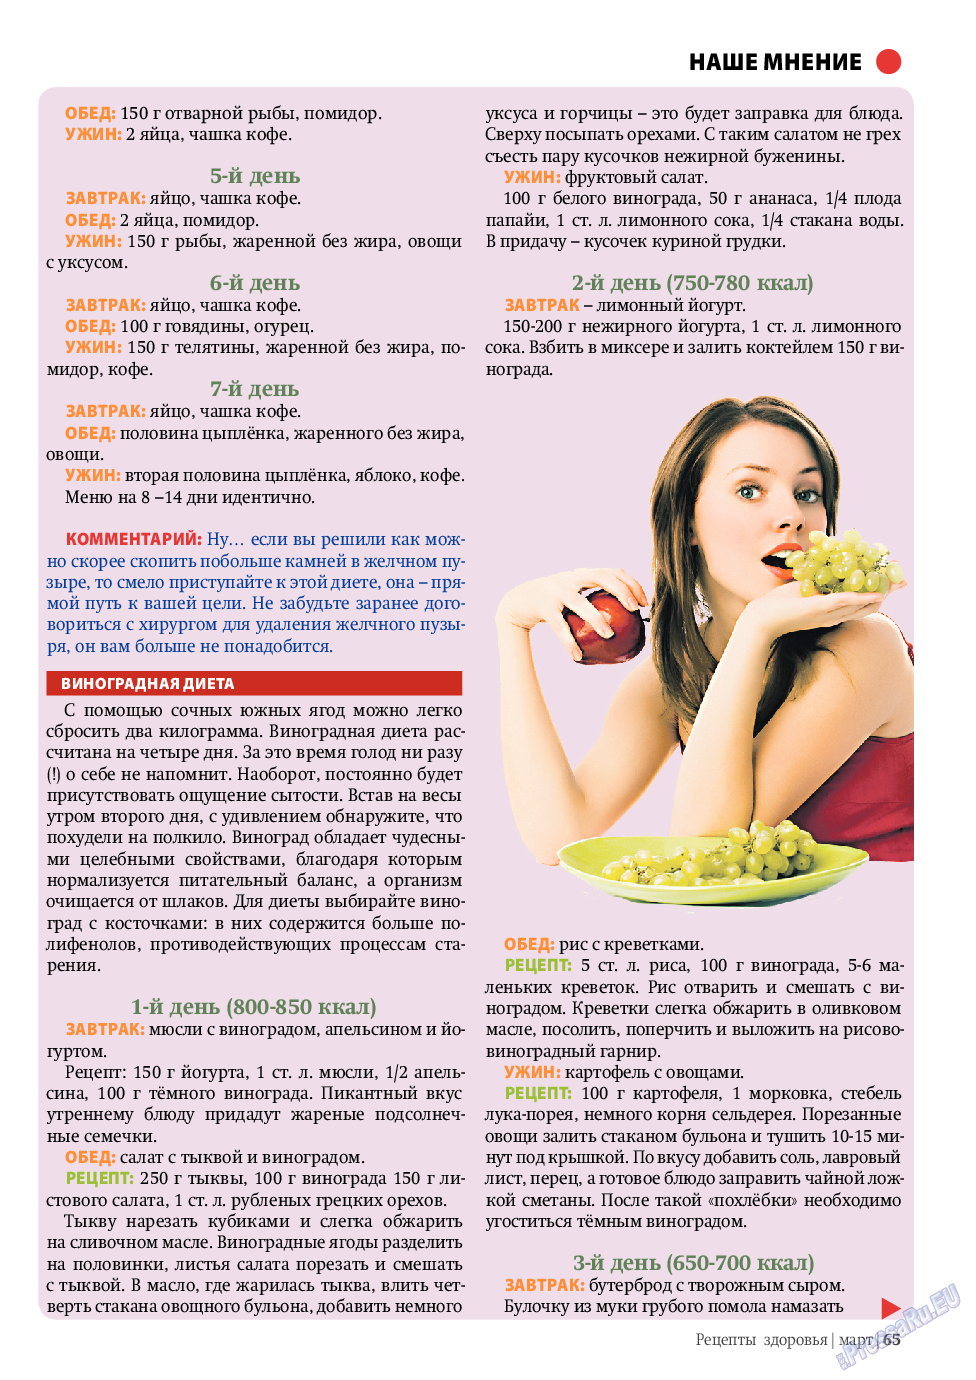 Рецепты здоровья, журнал. 2011 №3 стр.65